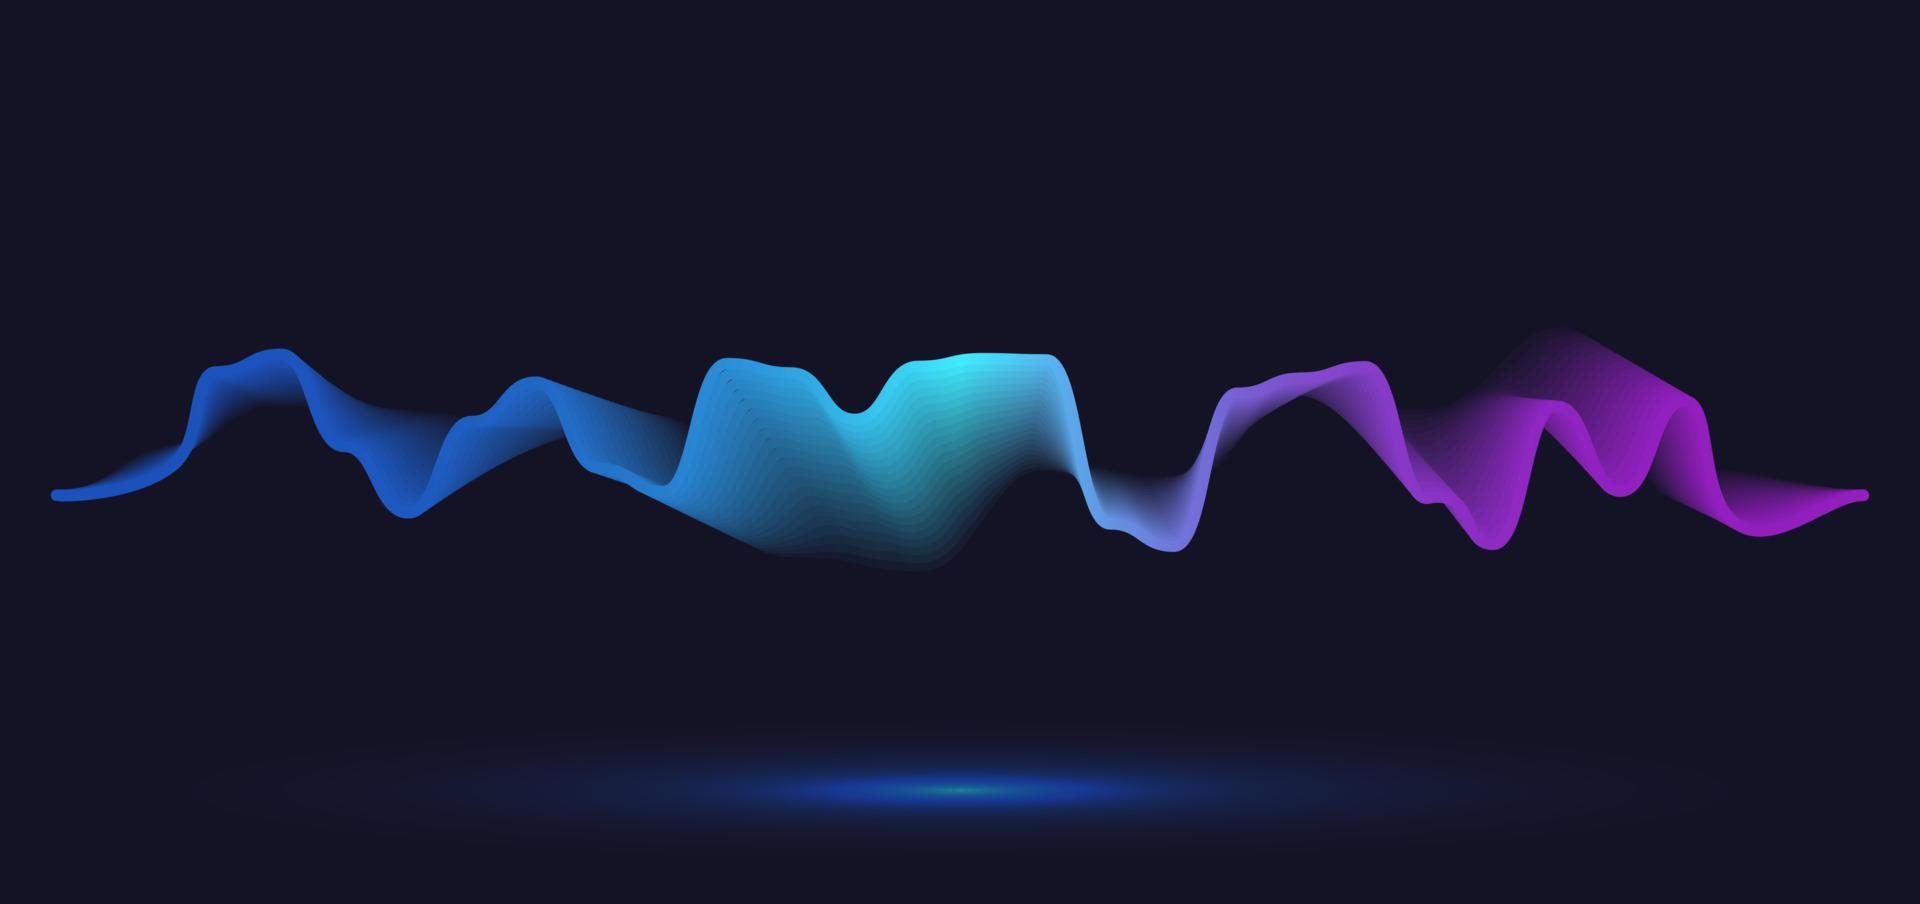 linea d'onda di movimento astratta. disegno vettoriale di sfondo della linea sfumata.